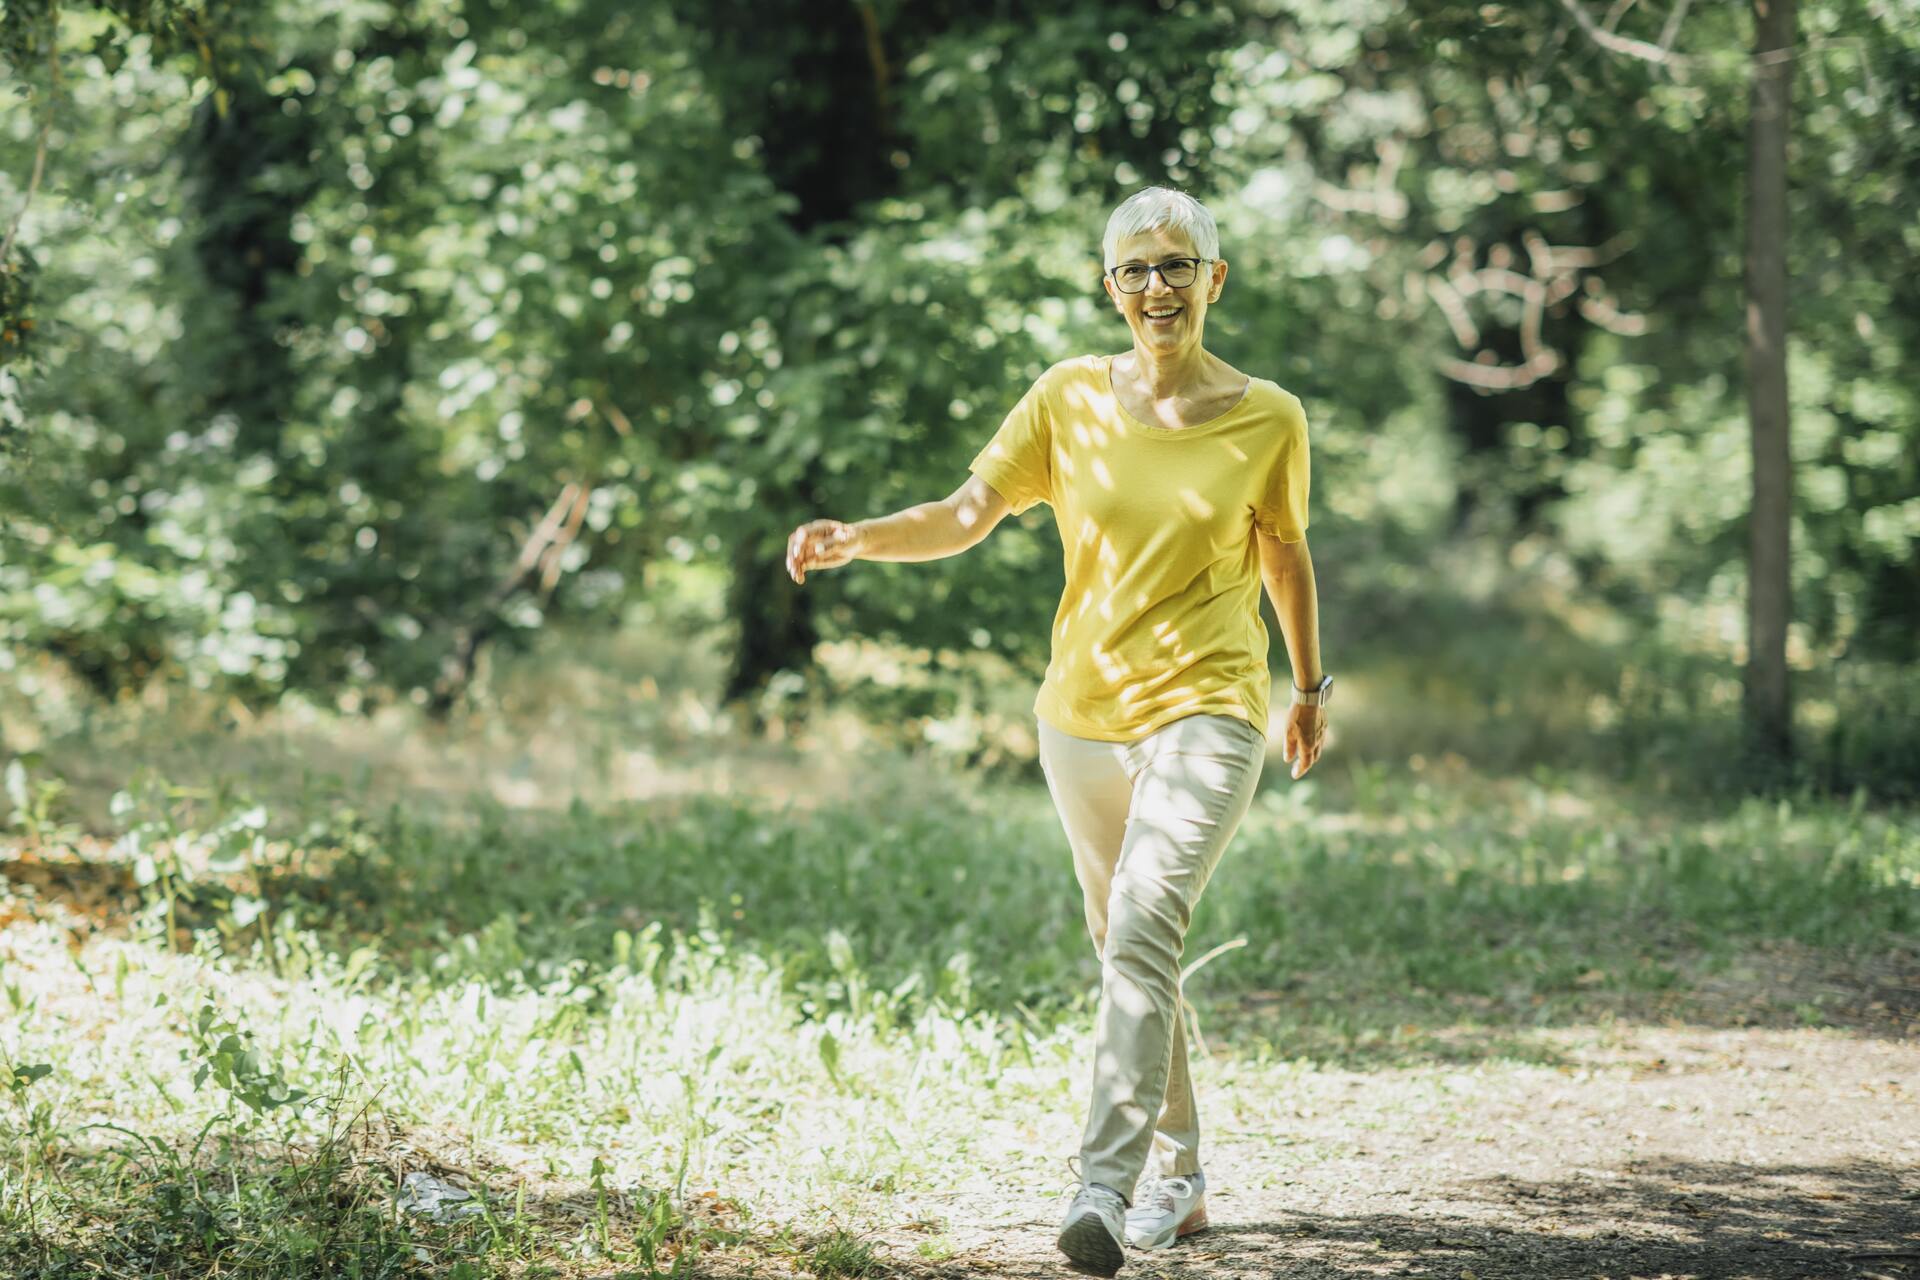 Menopausa: è importante praticare un’attività fisica regolare, soprattutto anaerobica e aerobica